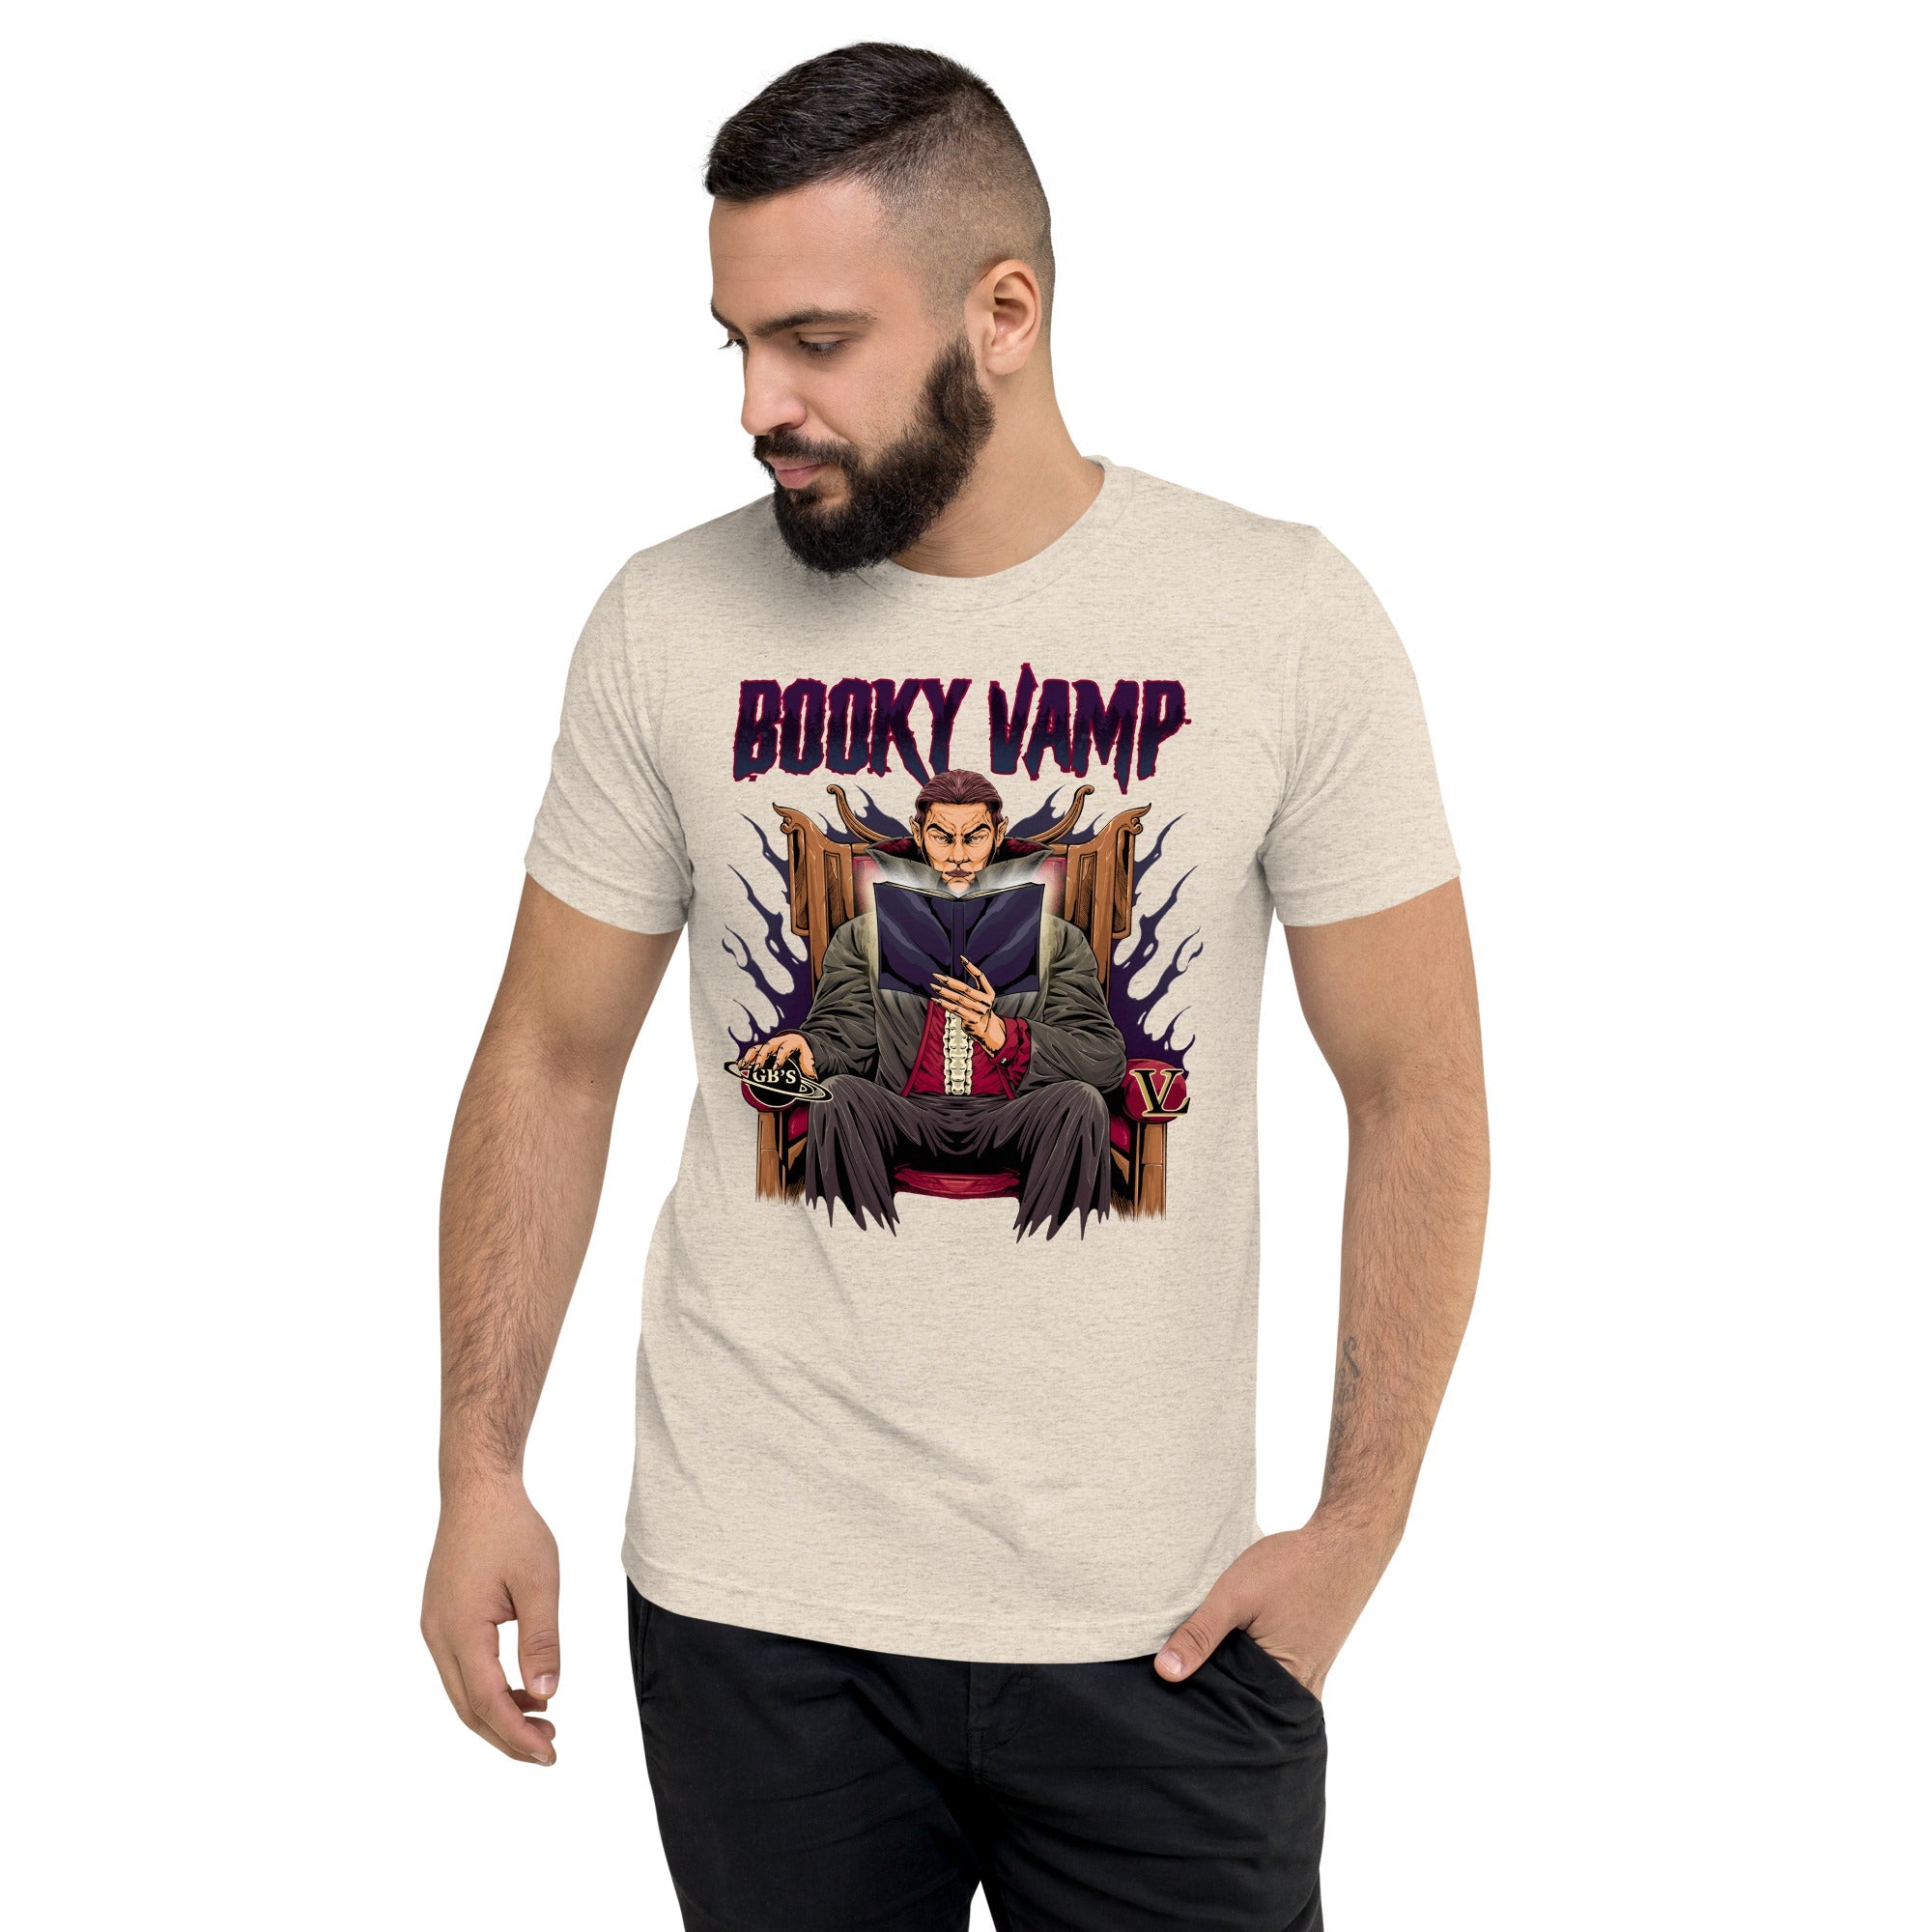 GBNY Oatmeal Triblend / XS Vamp Life X GBNY "Booky Vamp" T-shirt - Men's 2381652_6821